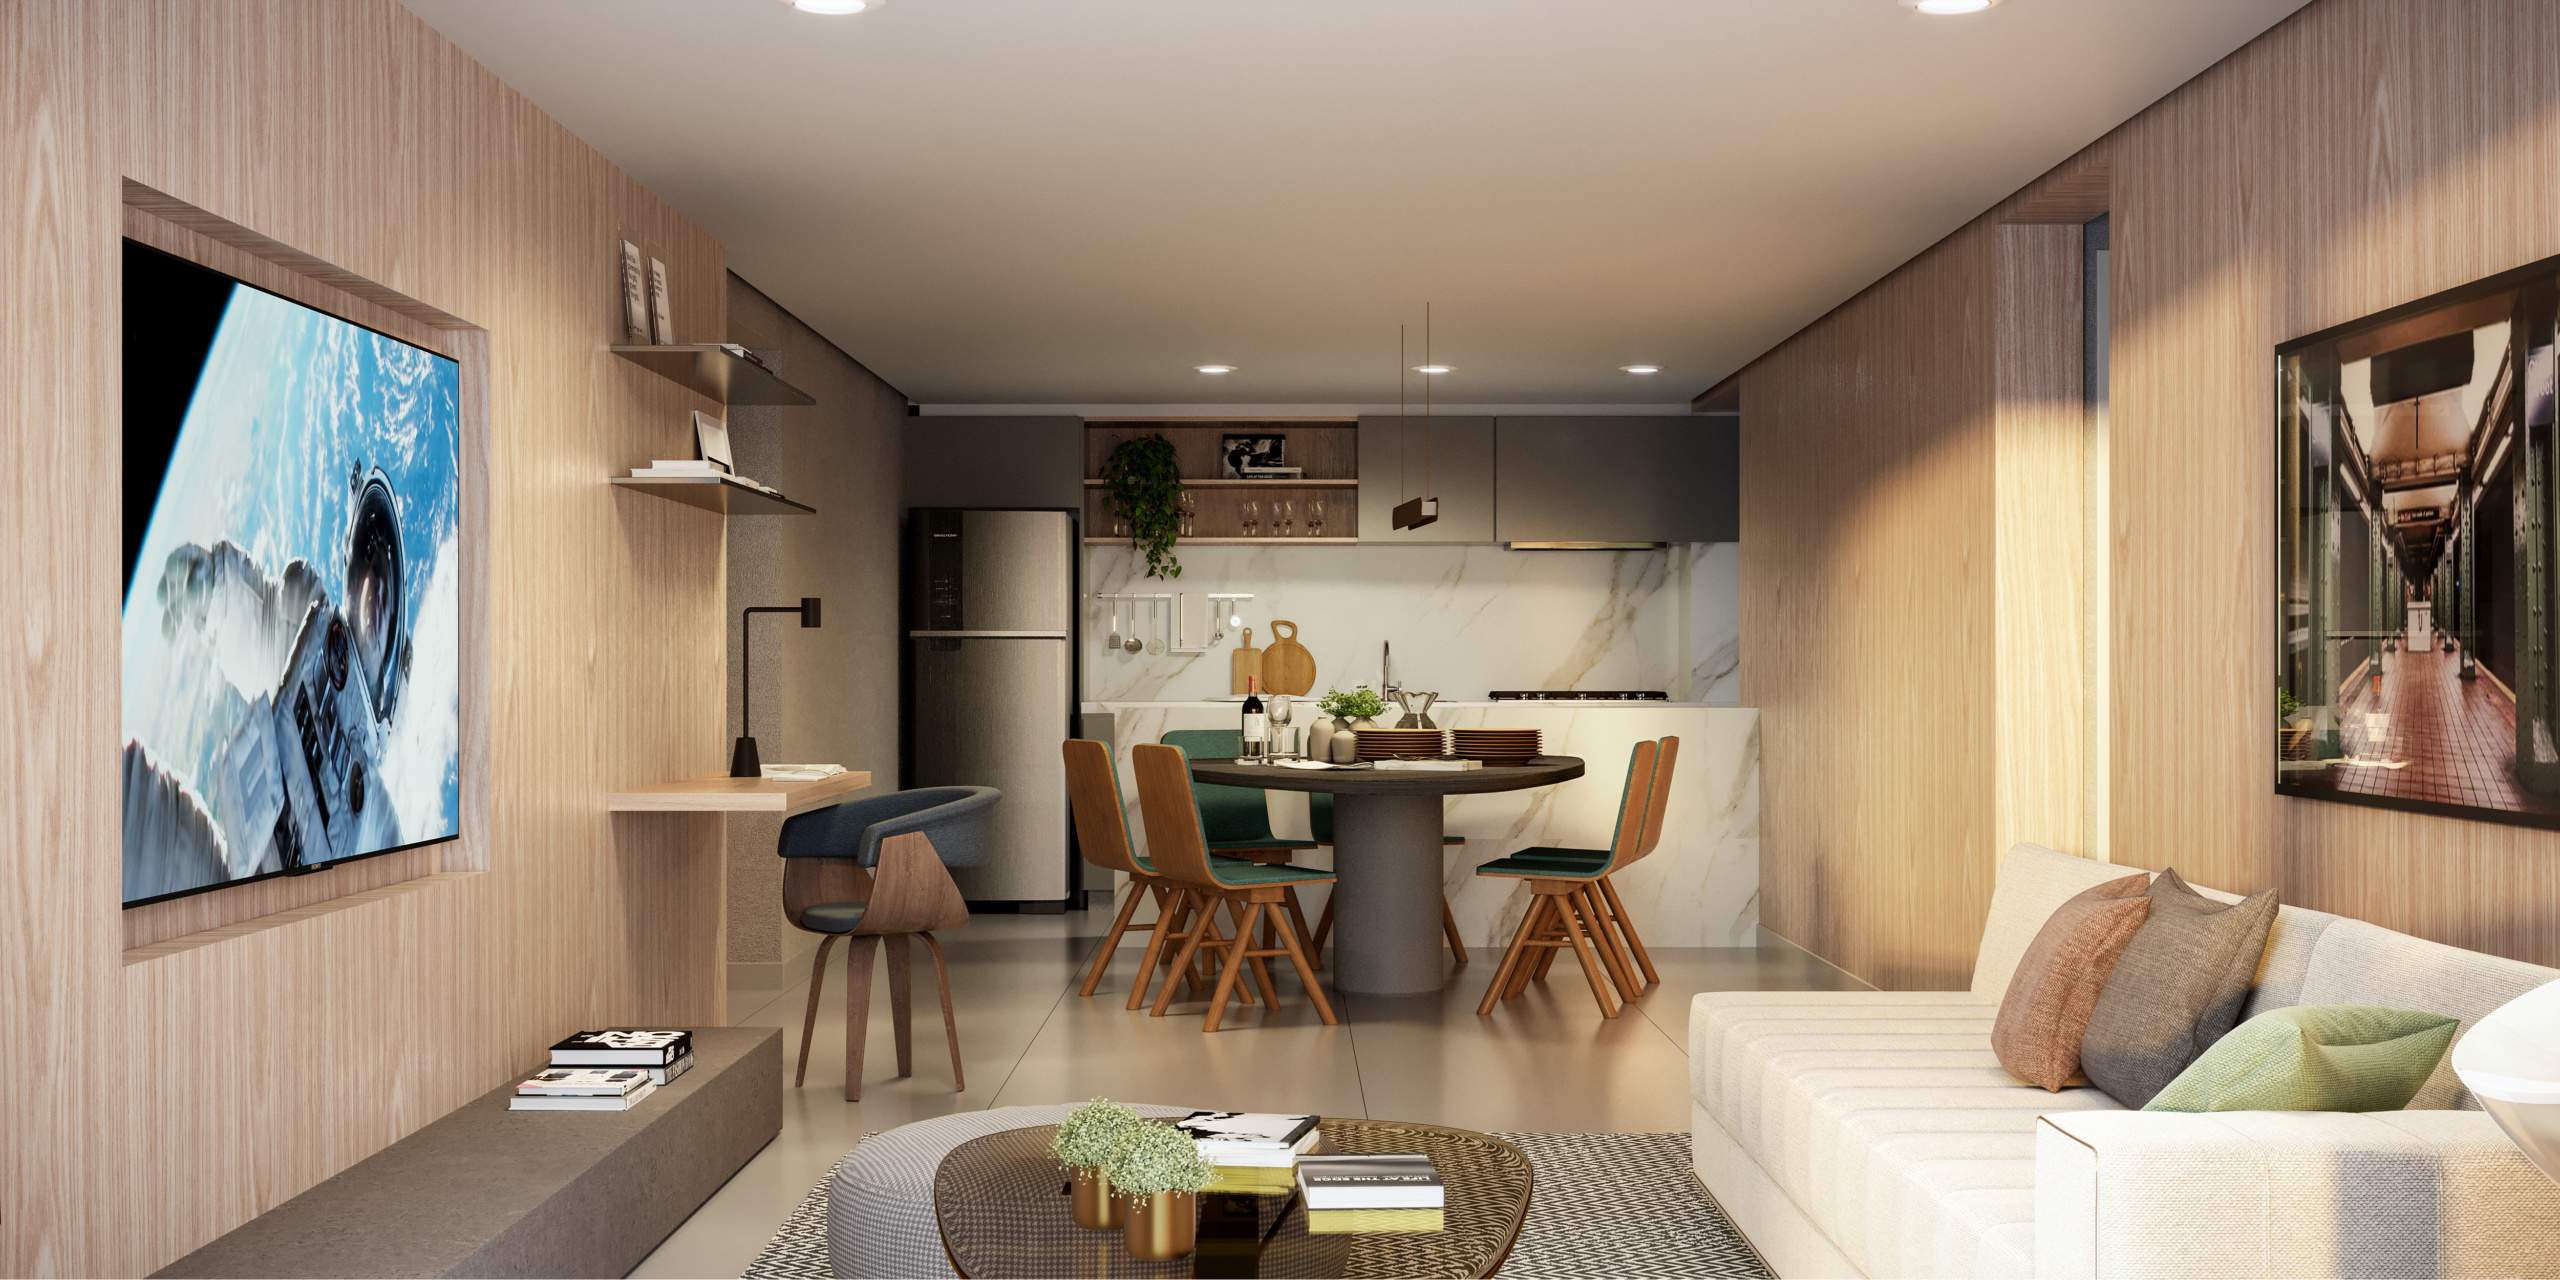 apartamento com sala e cozinha integradas